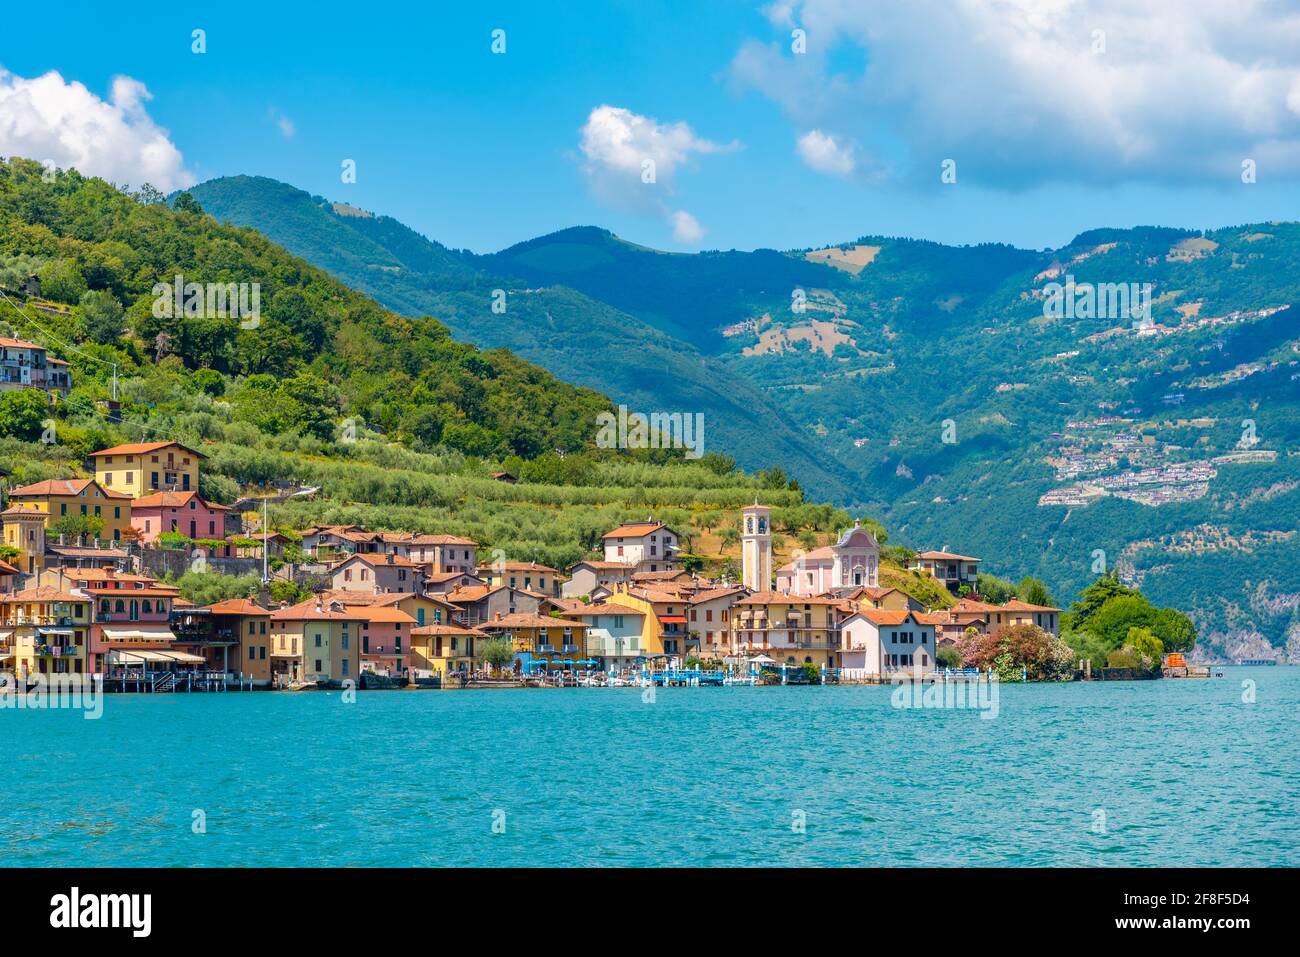 Carzano pueblo en la isla de Monte Isola en el lago Iseo en Italia Foto de stock